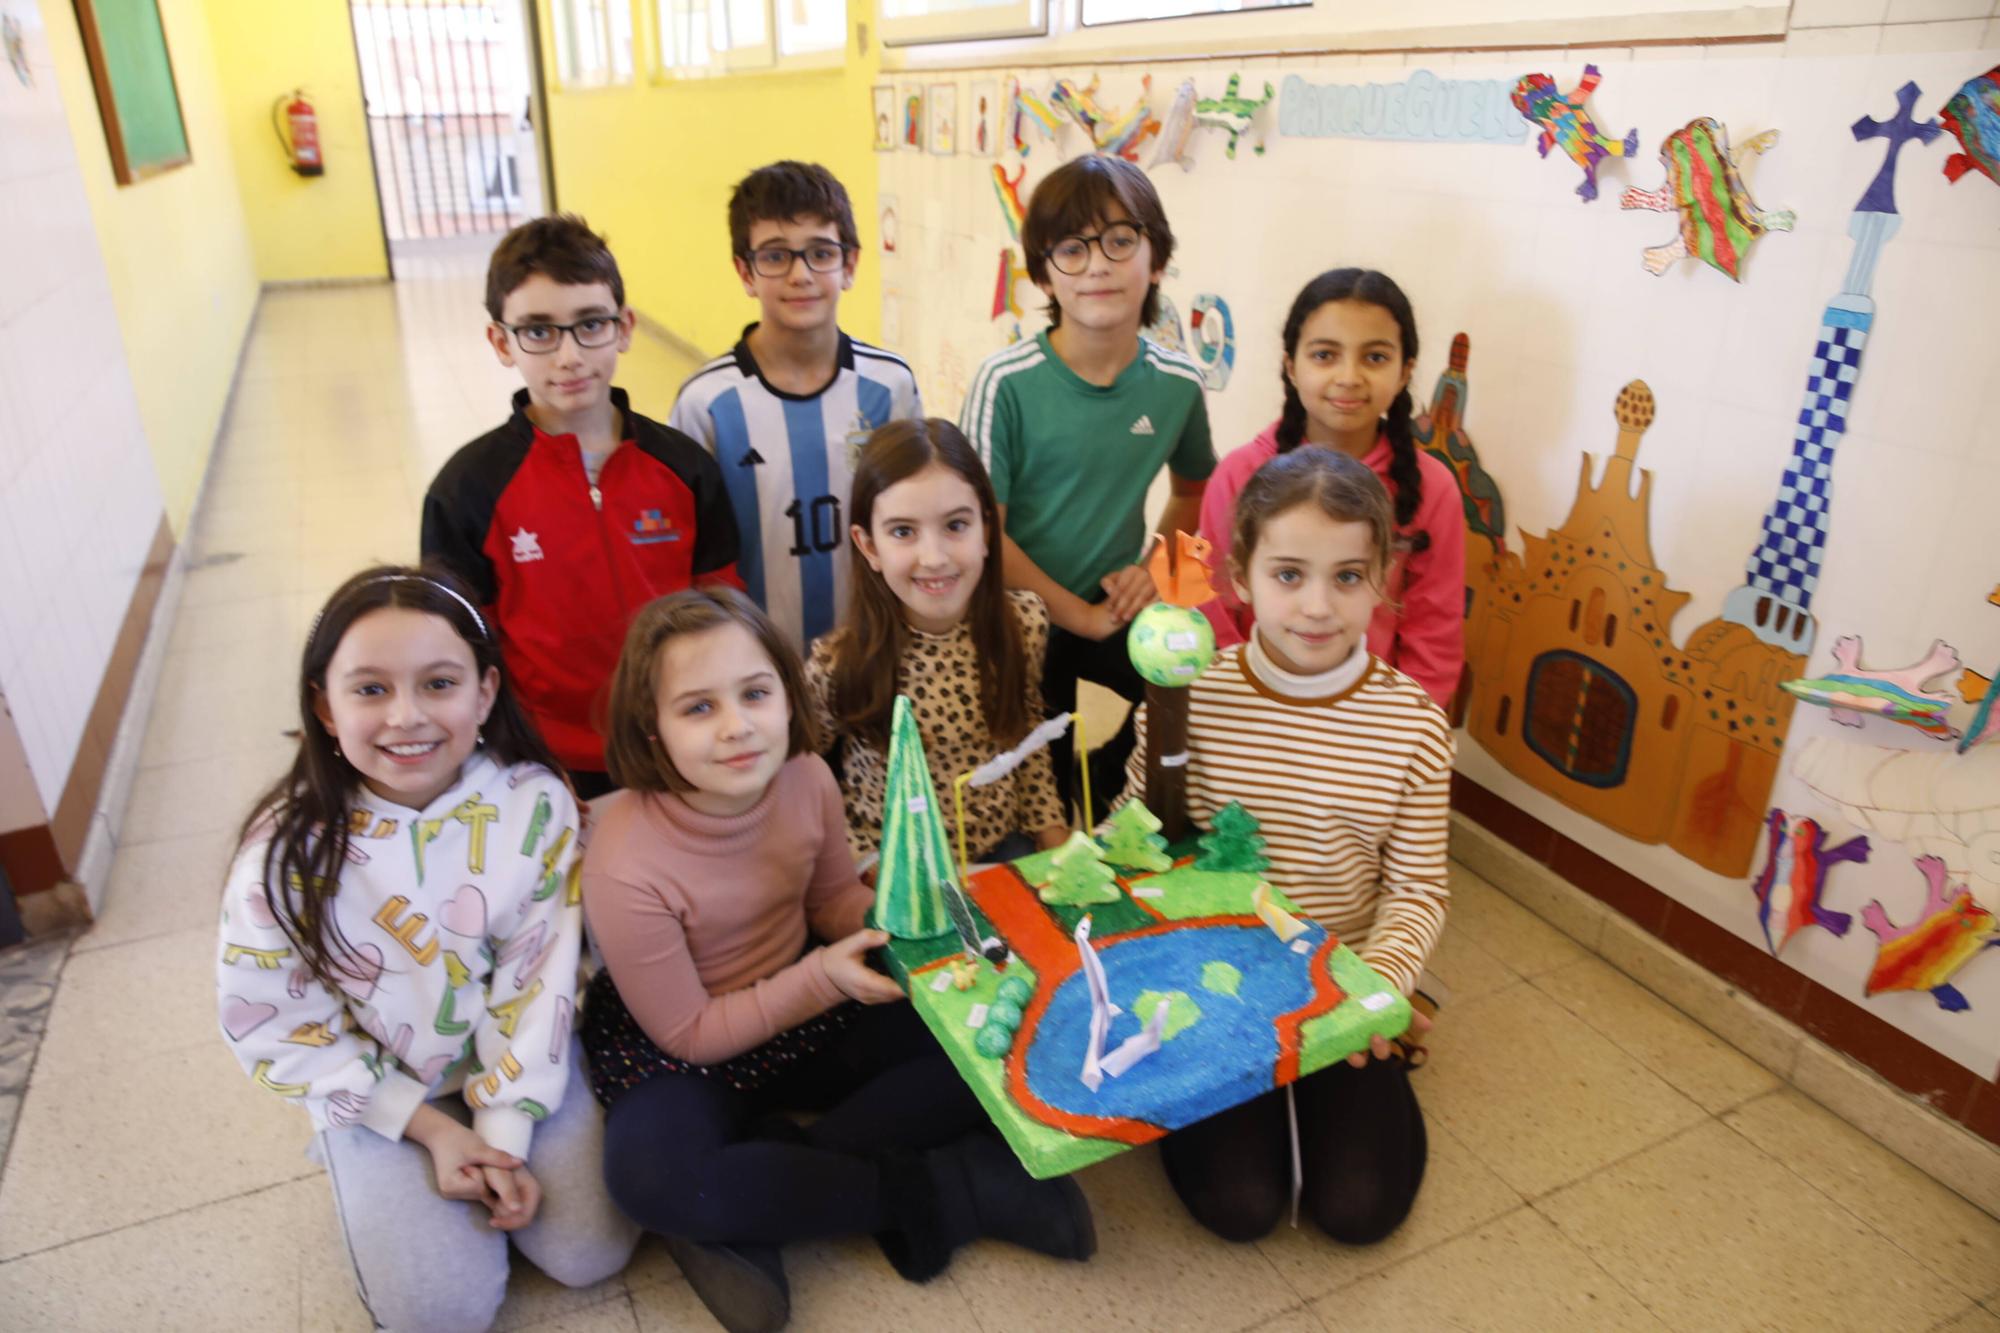 La serie "De aula en aula" visita el colegio García Lorca